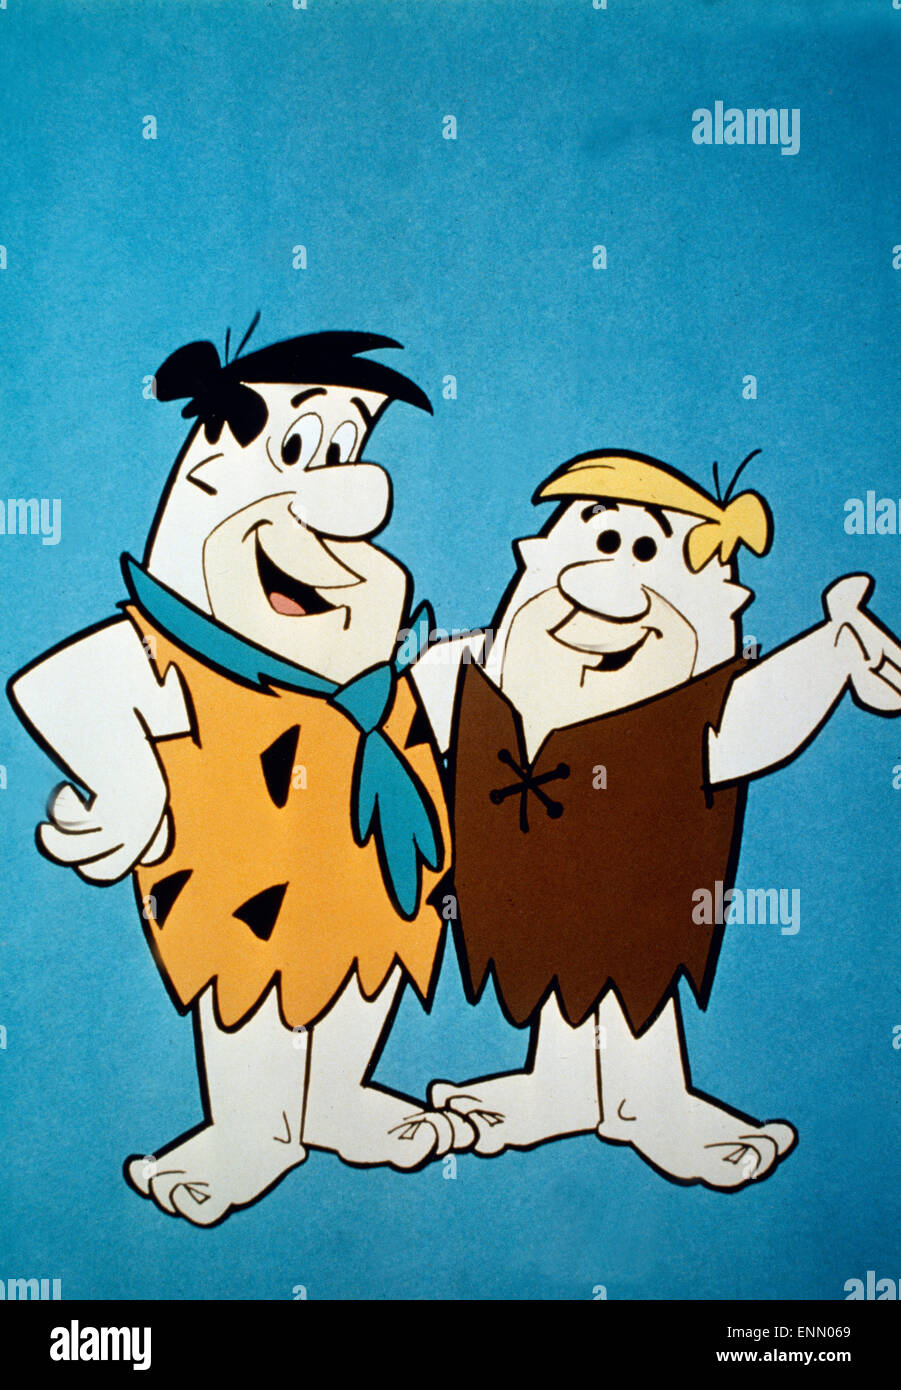 Familie Feuerstein, USA 1960, aka: i Flintstones, TV-Serie, Fernsehserie, Zeichentrick, Zeichentrickfilm, Zeichentrickserie, R Foto Stock